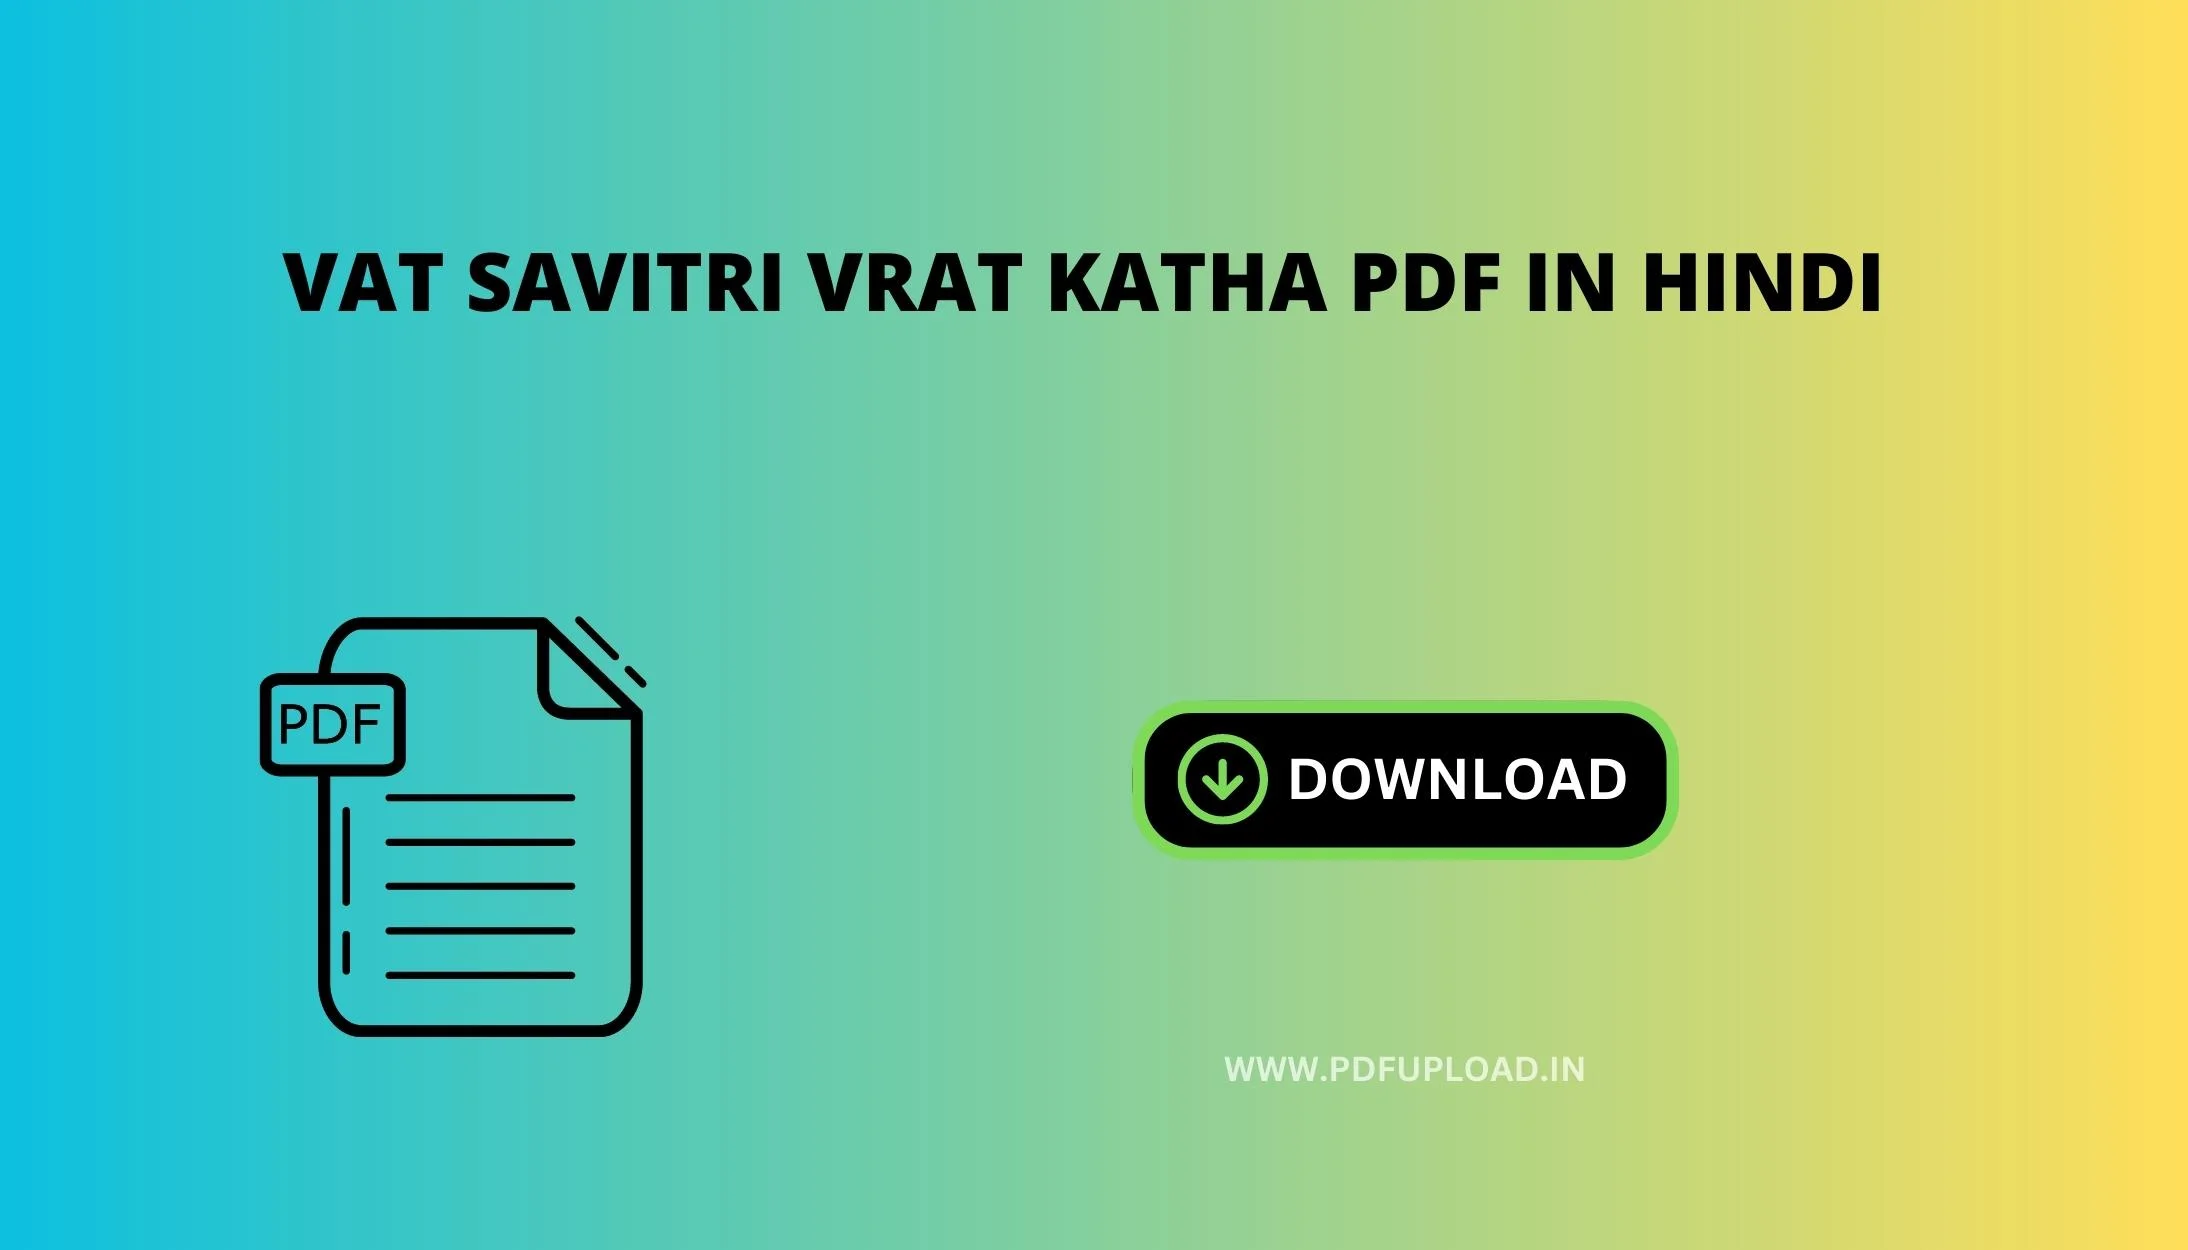 Vat Savitri Vrat Katha PDF in Hindi Download